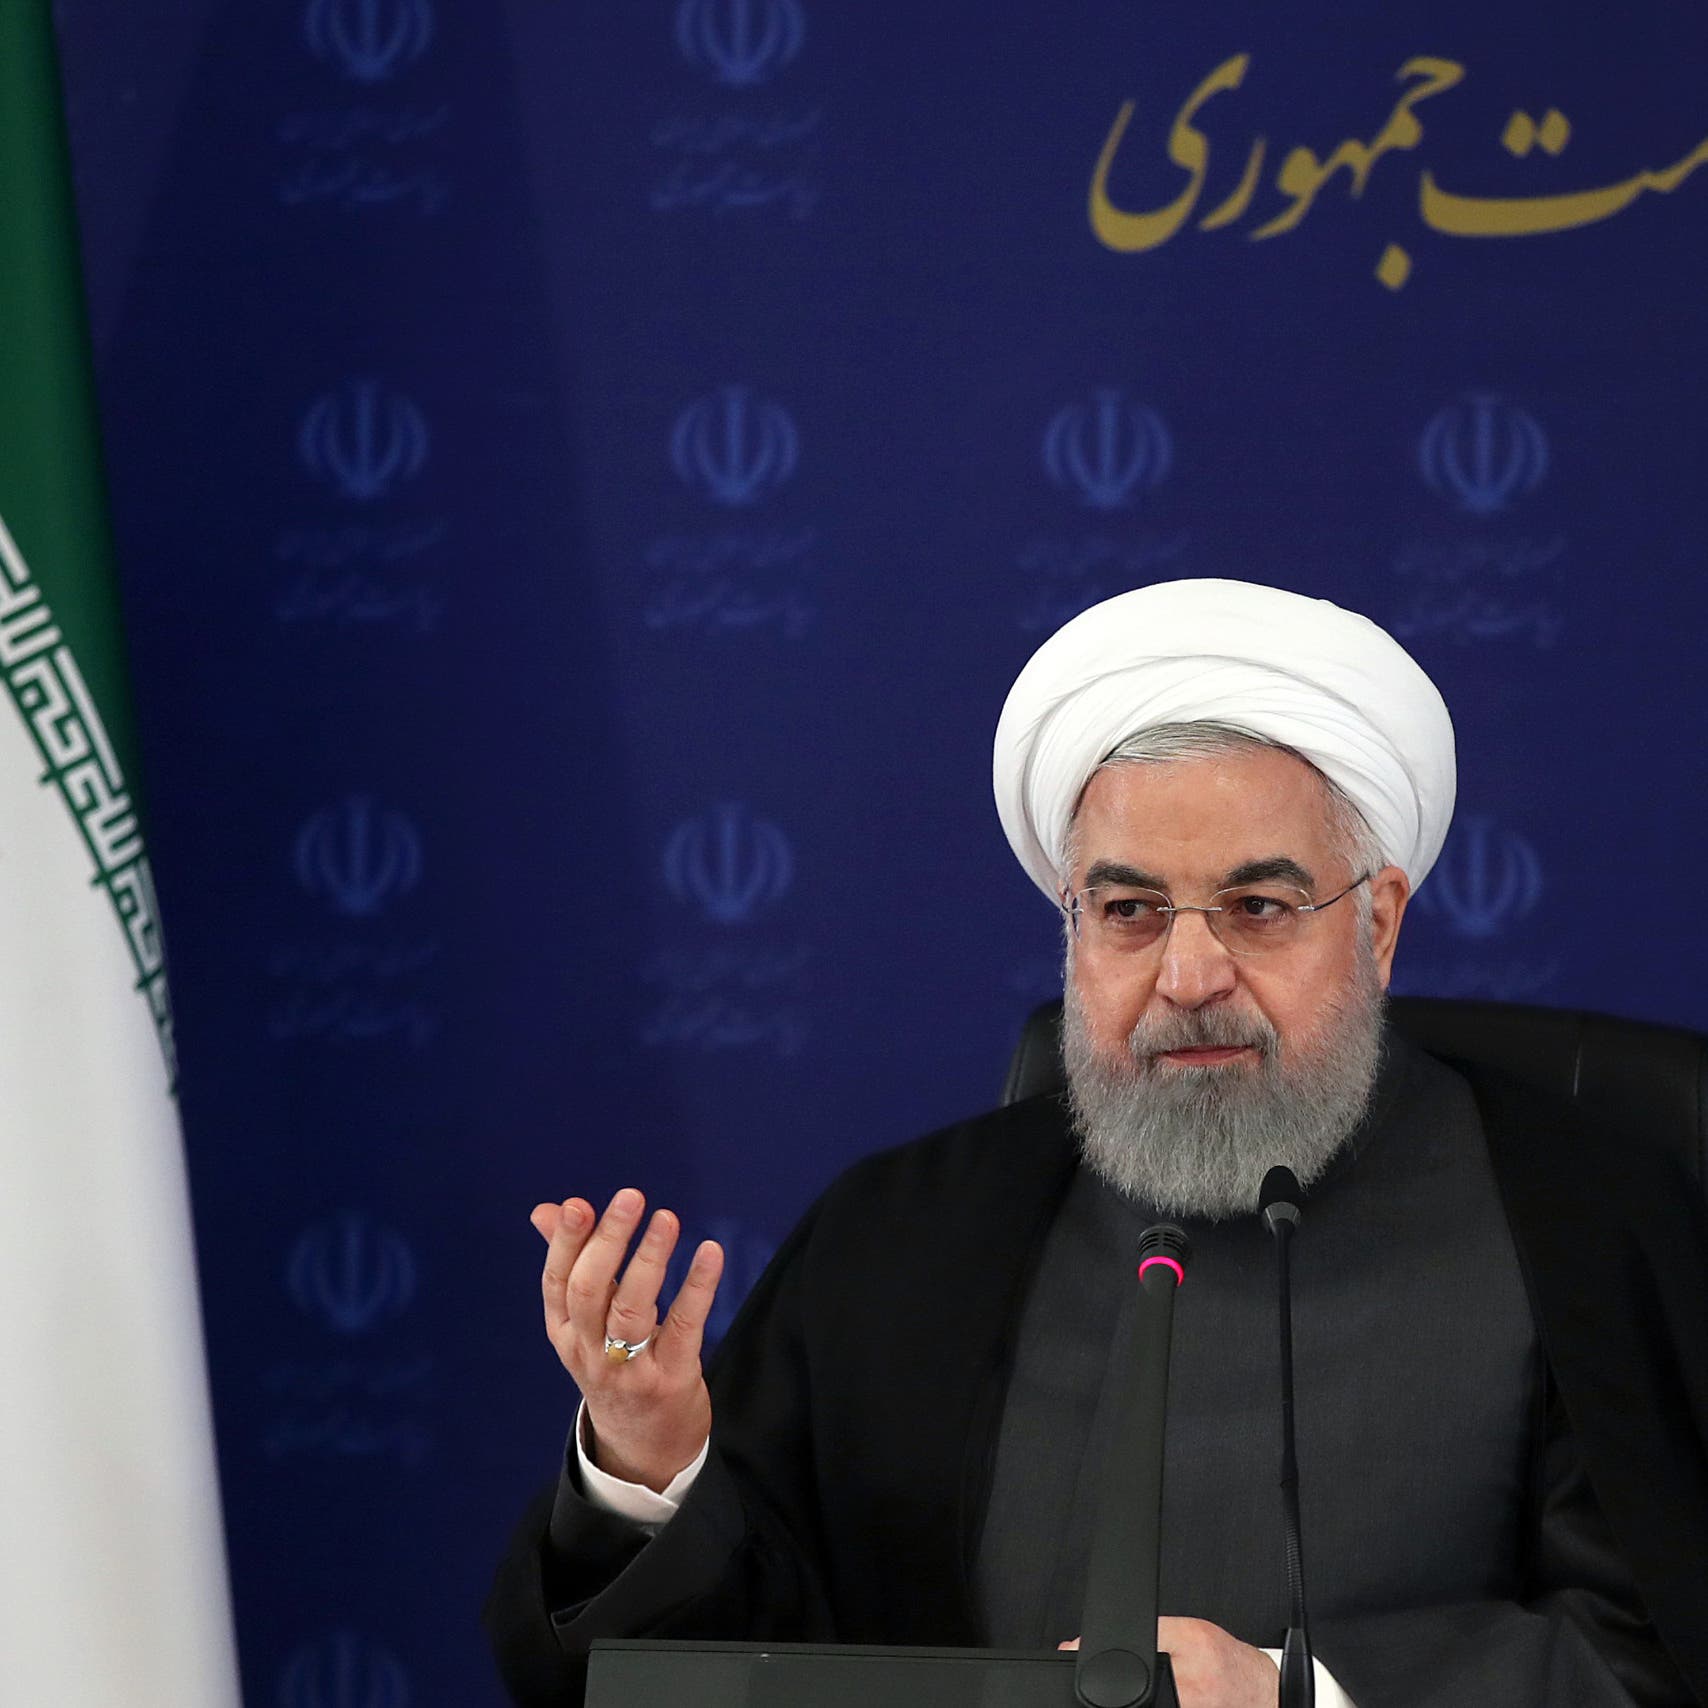 روحاني يعترف بالصدام الداخلي على السلطة: ليس هذا وقت الصراع